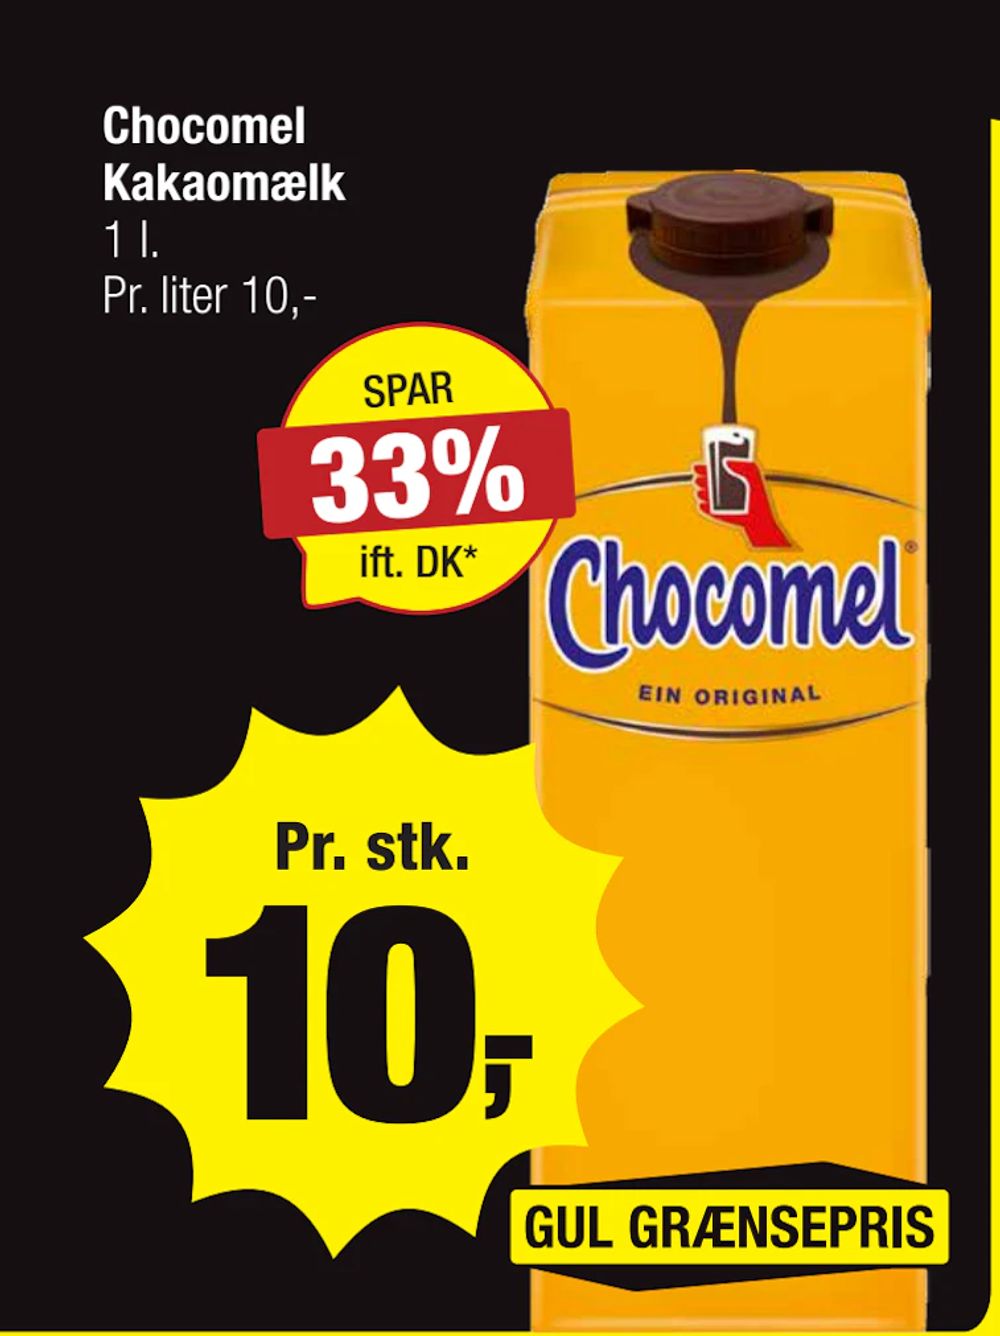 Tilbud på Chocomel Kakaomælk fra Calle til 10 kr.